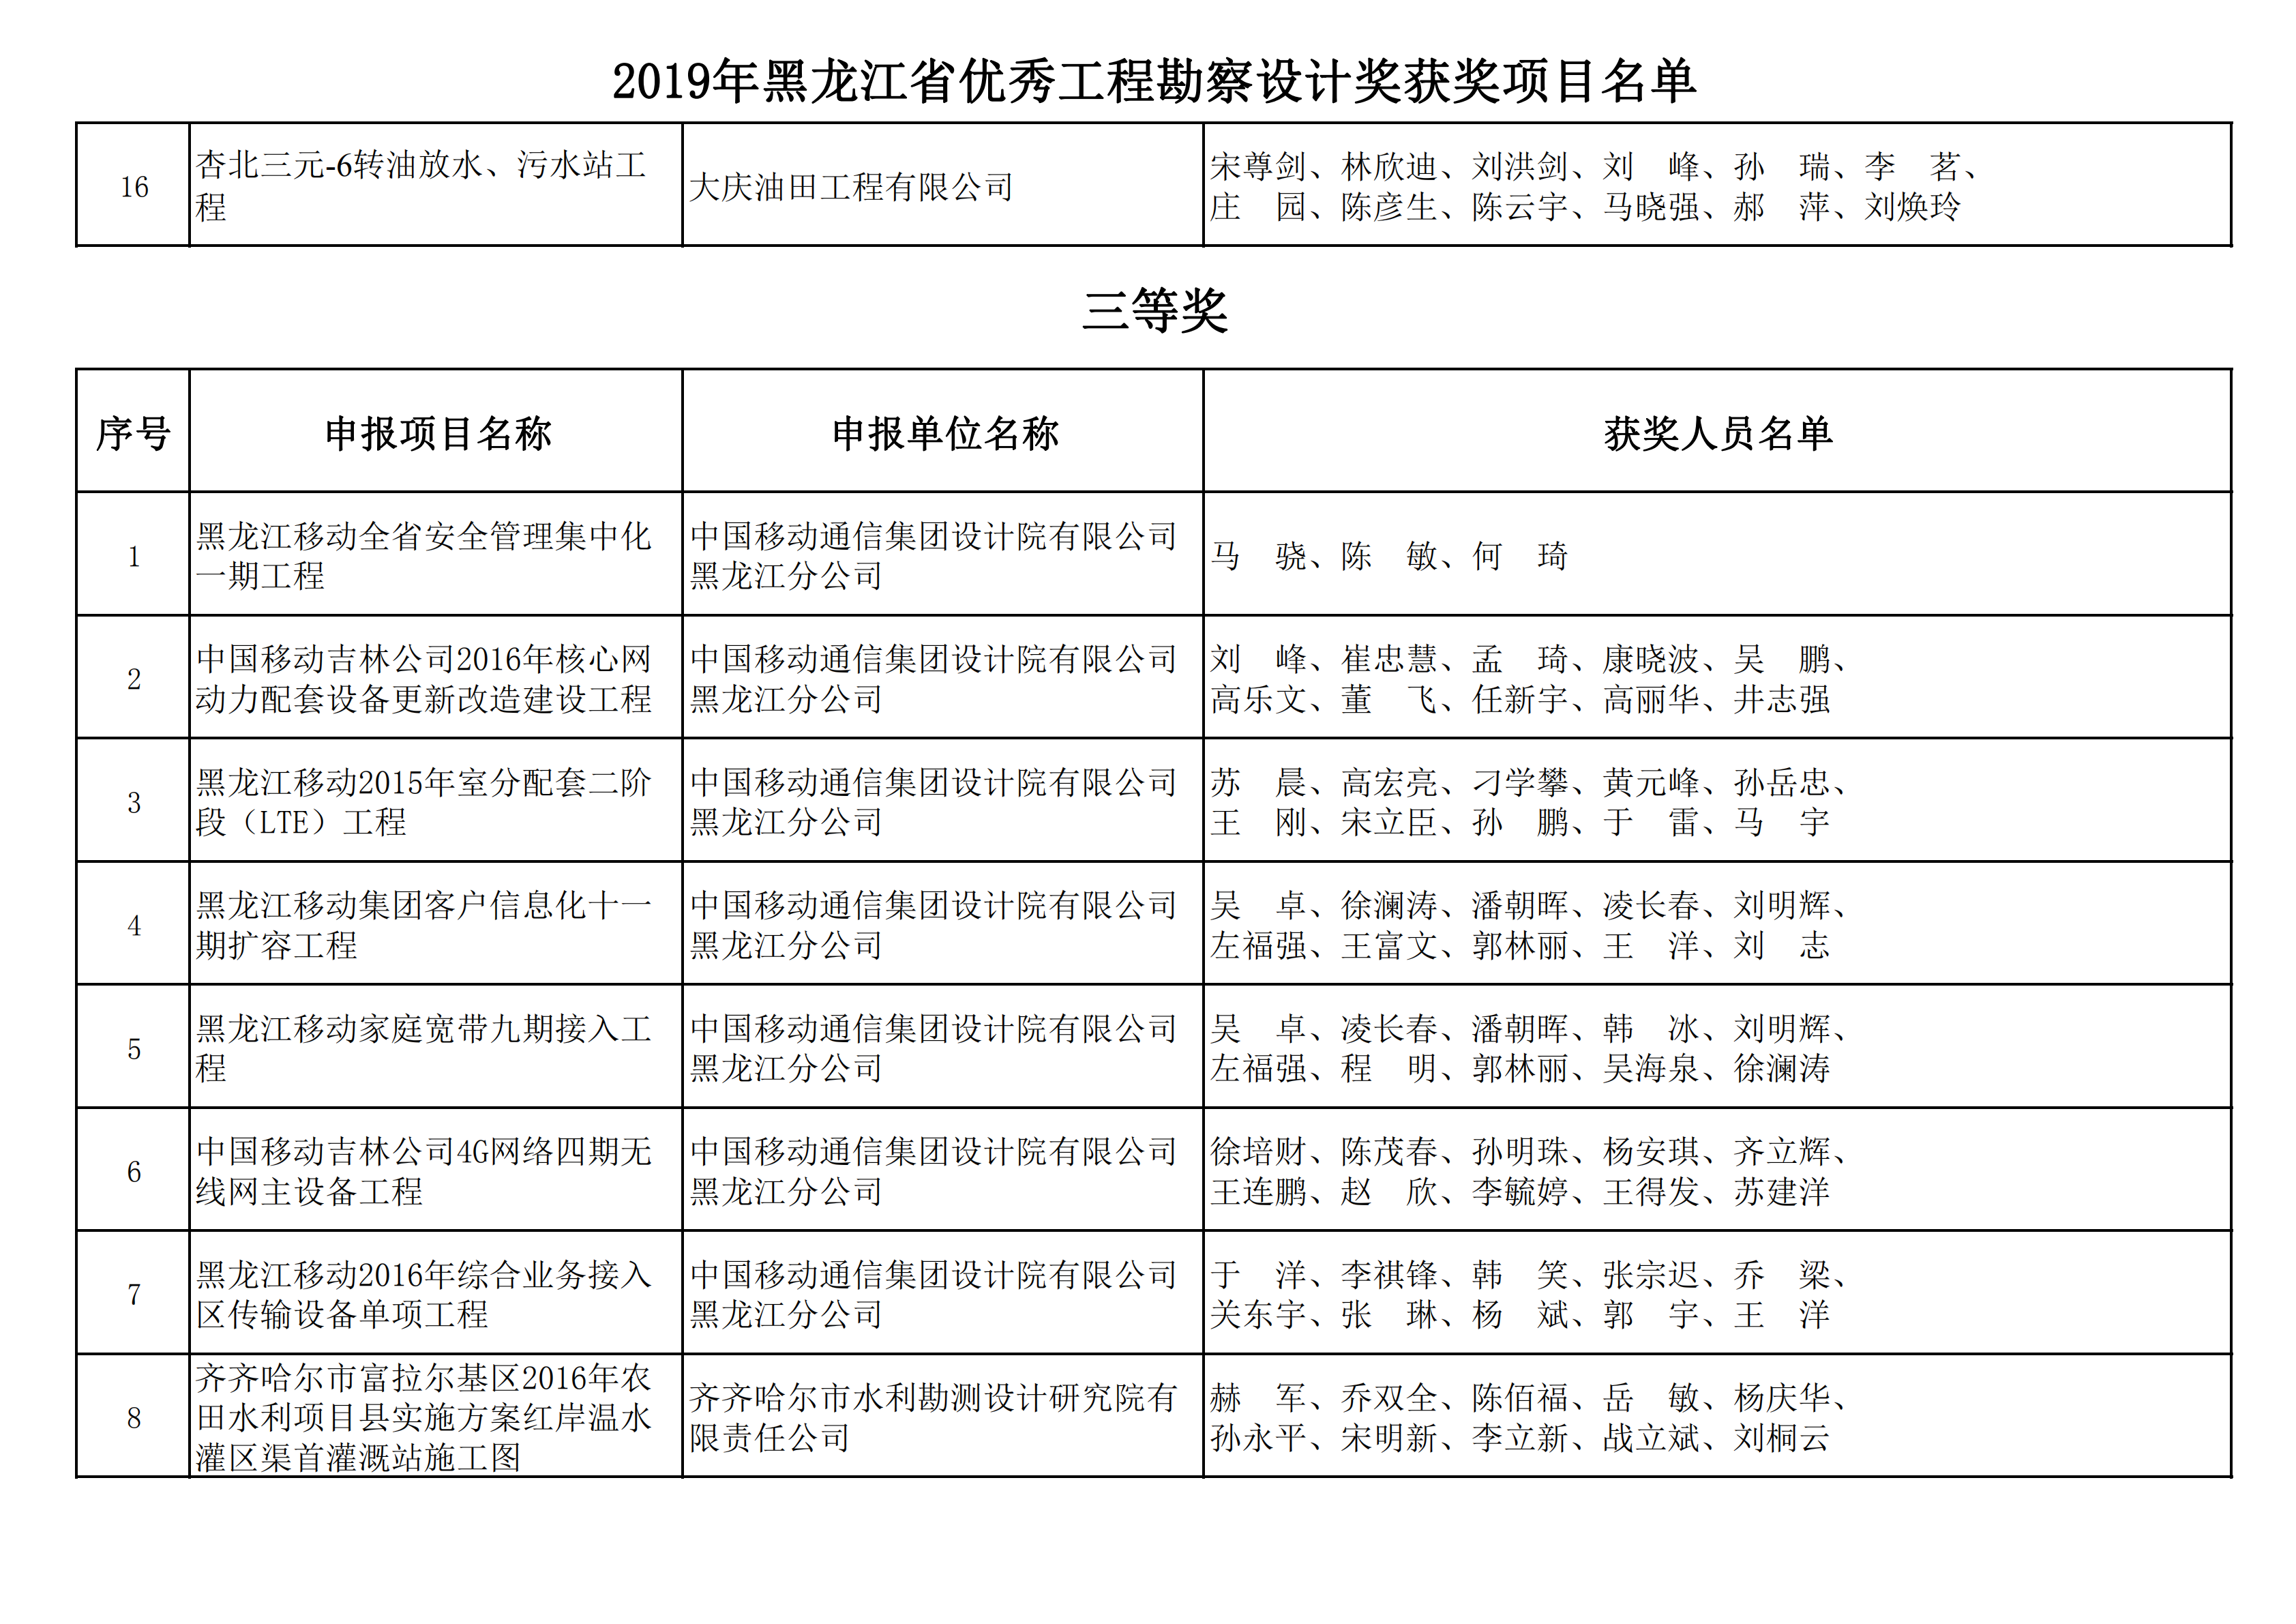 2019年黑龙江省优秀工程勘察设计奖获奖项目名单_12.png